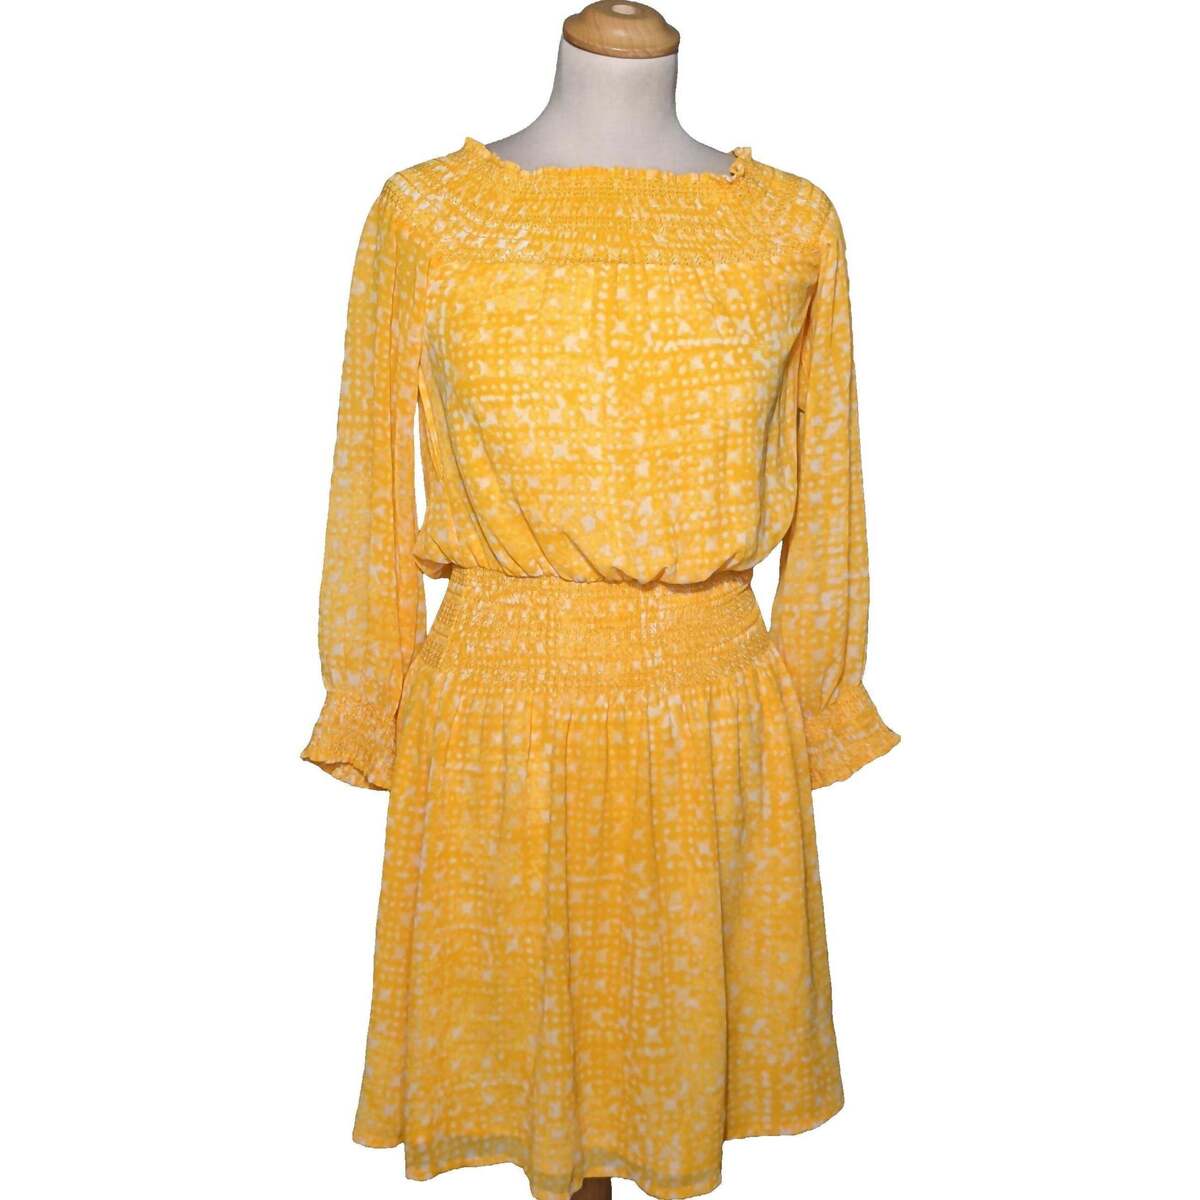 Vêtements Femme Donnez une nouvelle vie à votre dressing avec NewLife robe courte  34 - T0 - XS Jaune Jaune